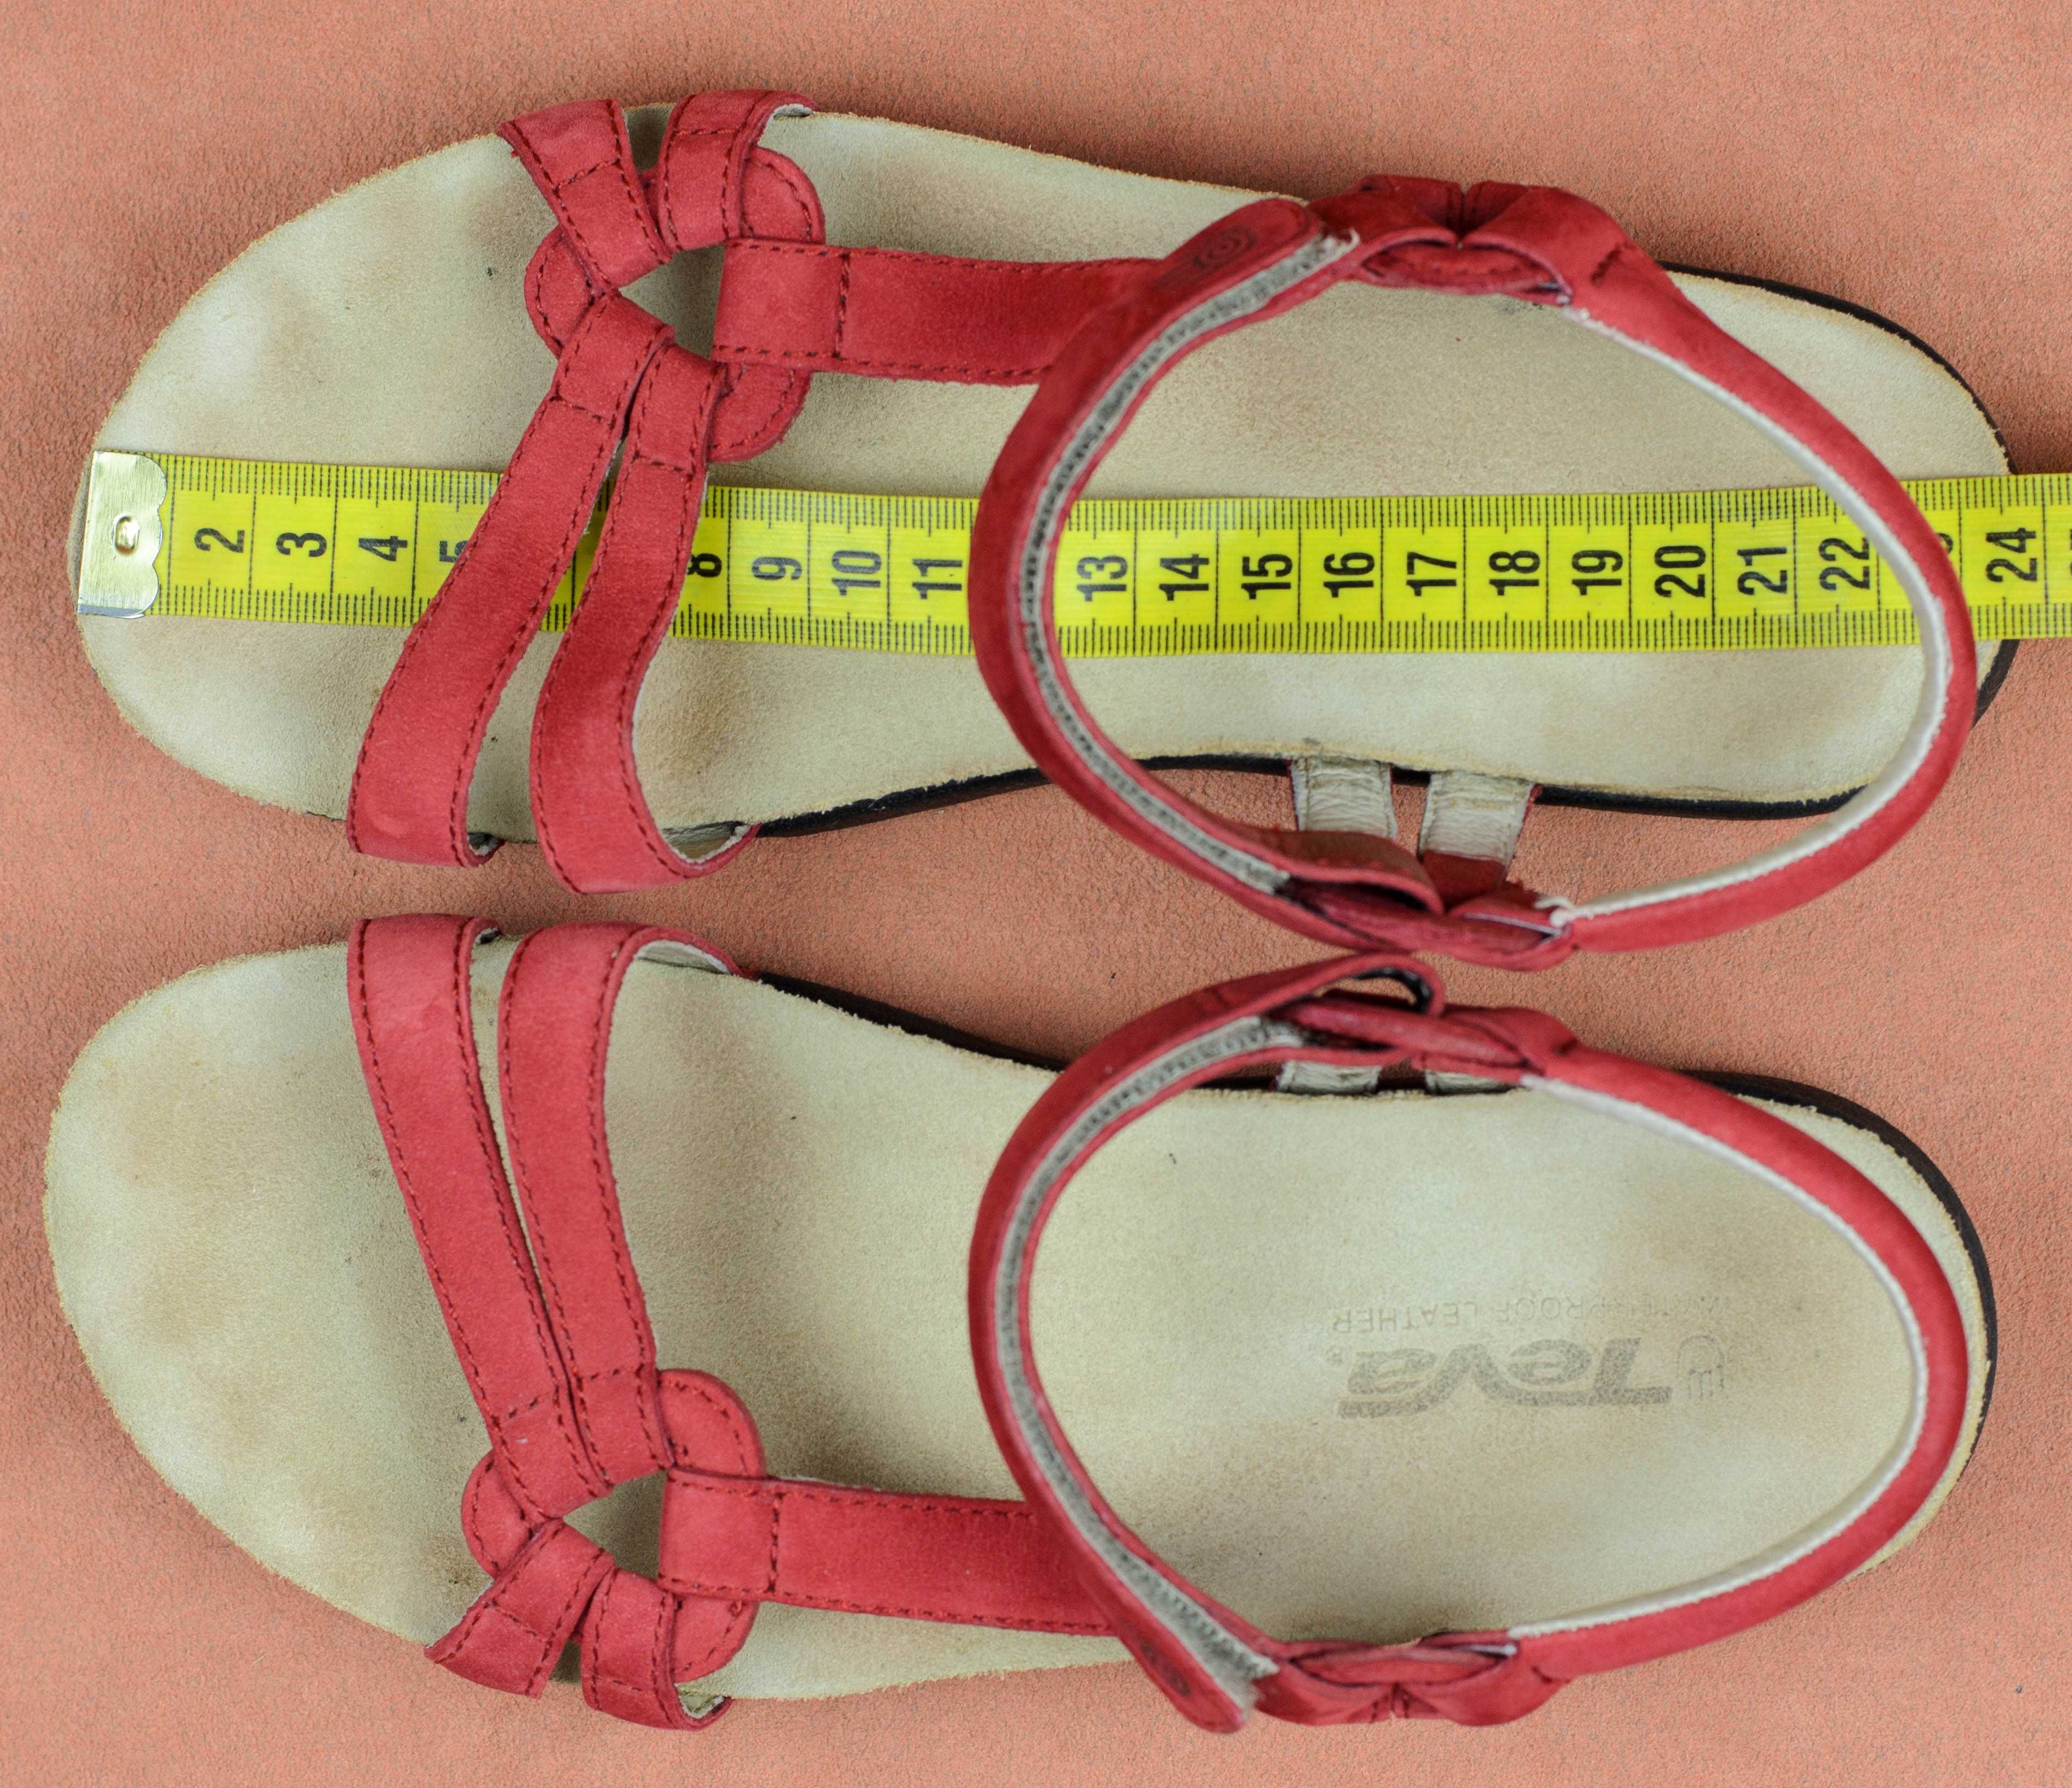 Кожаные сандалии босоножки Teva 6389 ventura cork Оригинал 37р 23,5 см